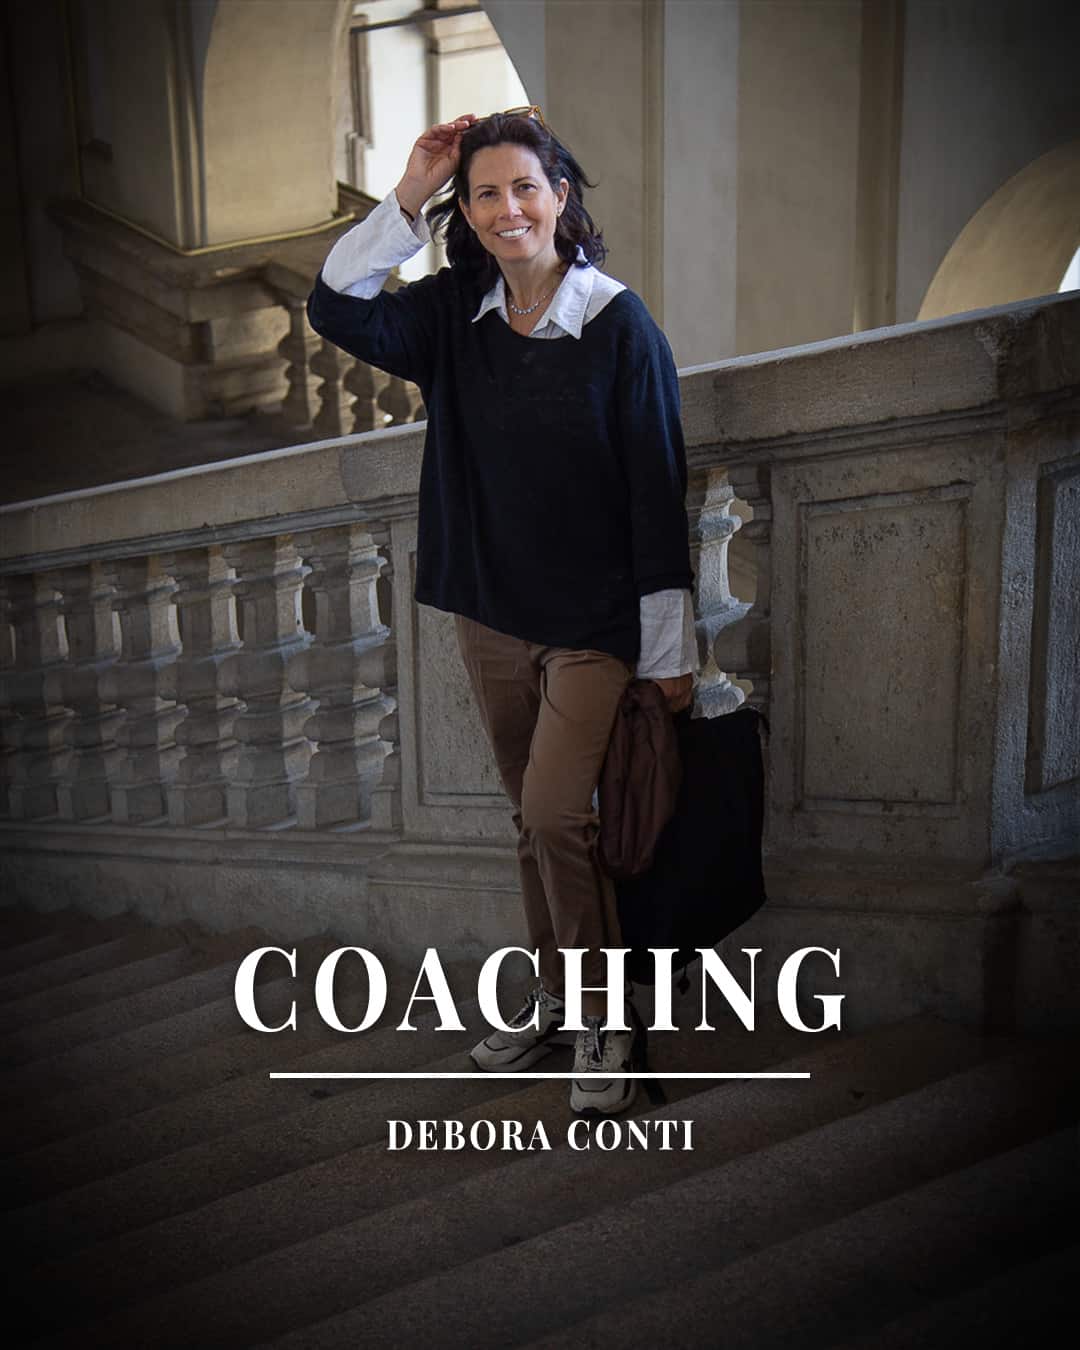 Debora Conti è autrice best seller di libri di crescita personale, Life coach professionista dal 2005, Trainer di PNL per la Society of NLP e laureata in psicologia. È docente di coaching per CcaItalia e continua a formarsi con Master di livello internazionale.